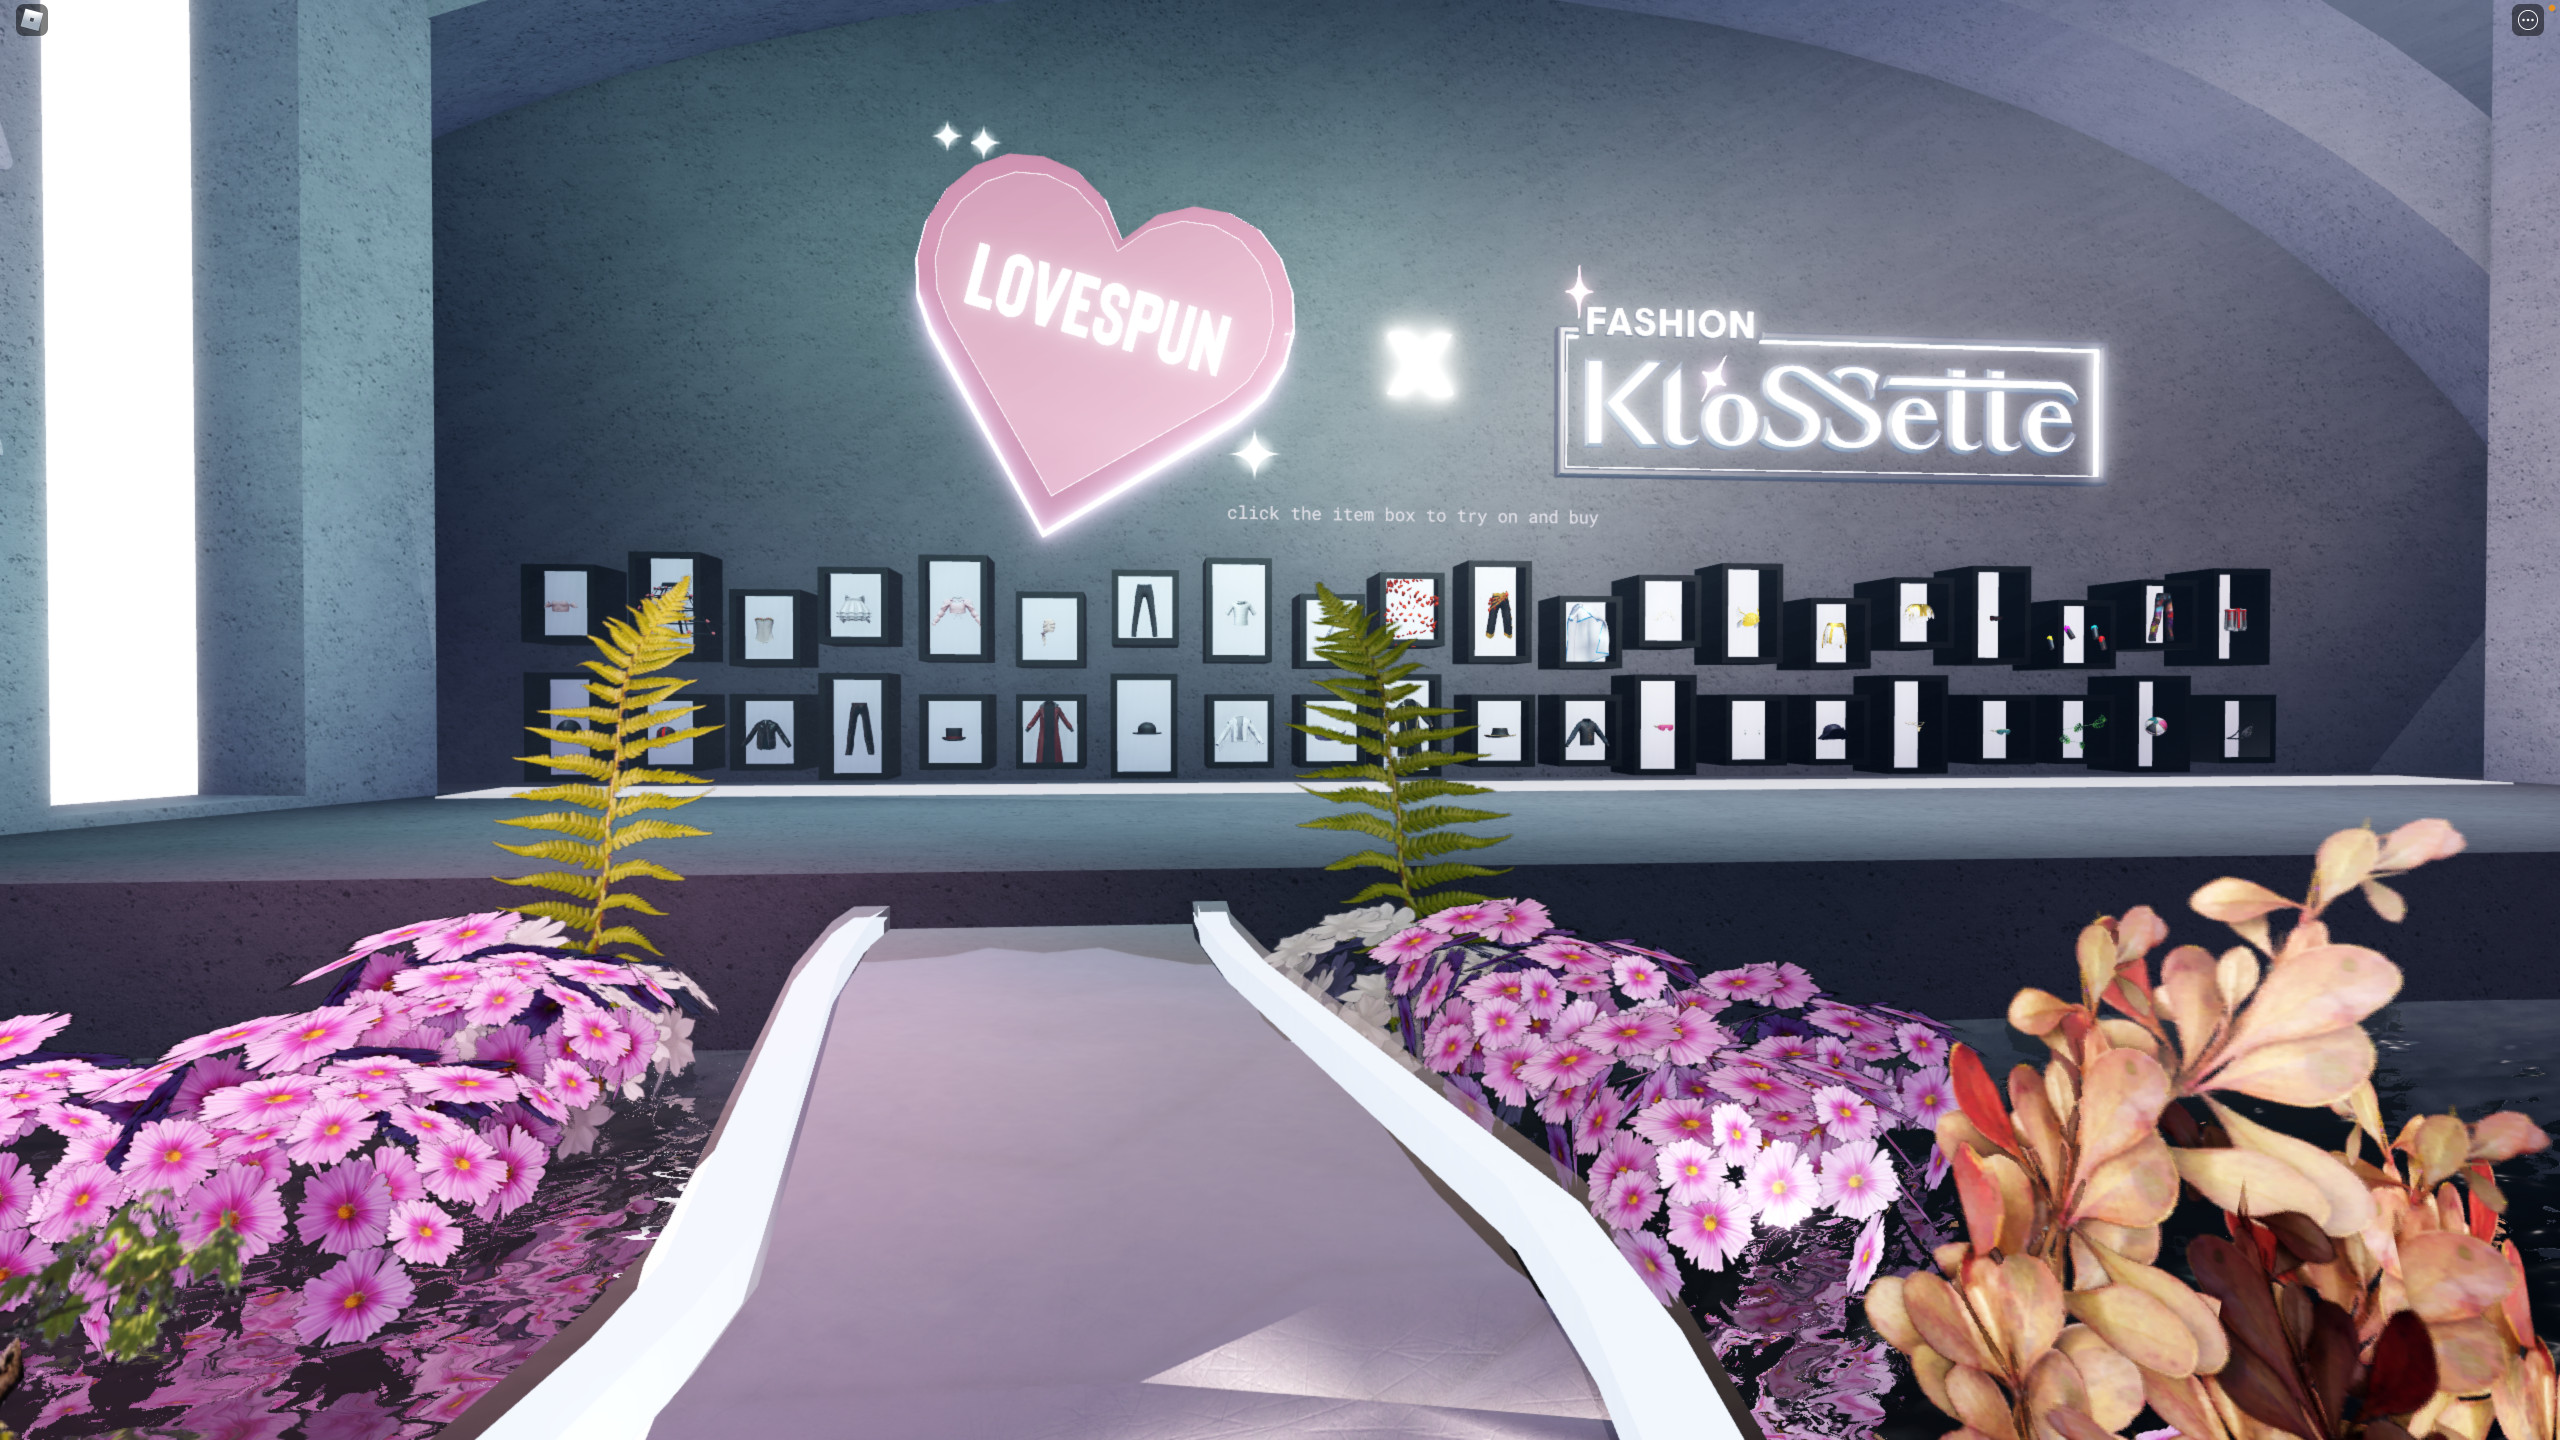 Karlie Kloss Fashion Klossette - ArtStation